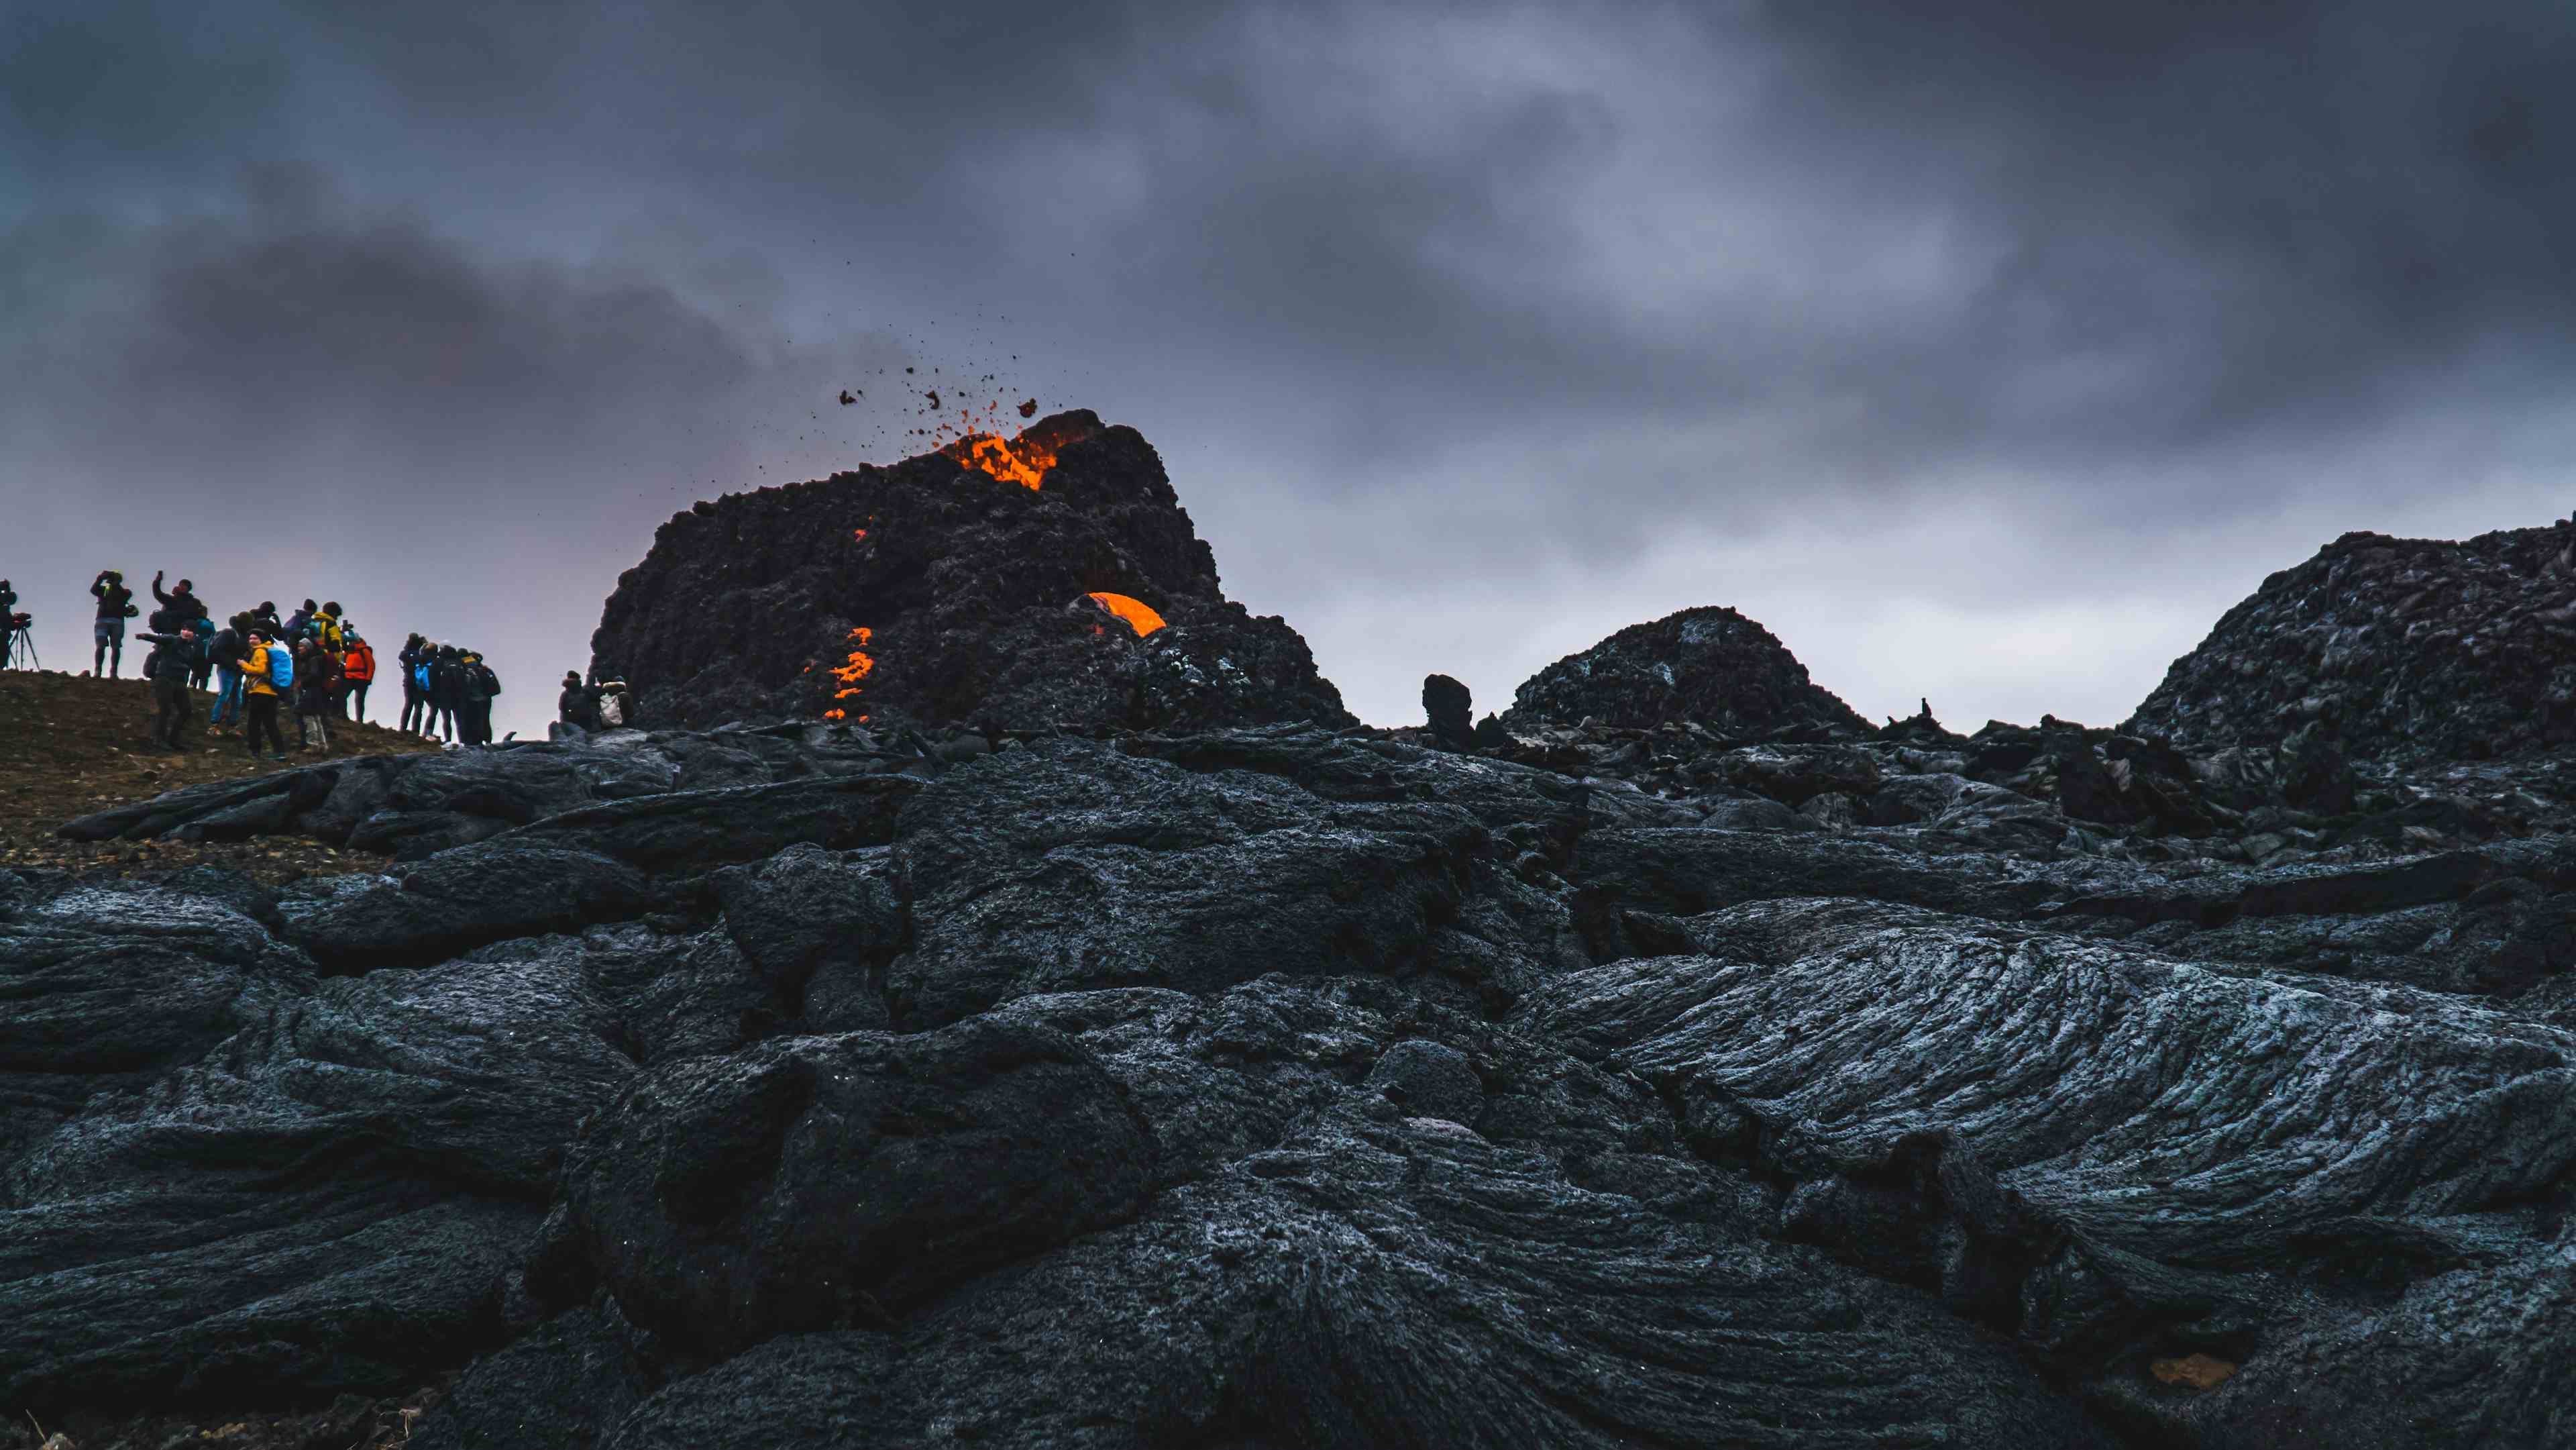 zz Geldingardalur Volcano Hike from Reykjavik